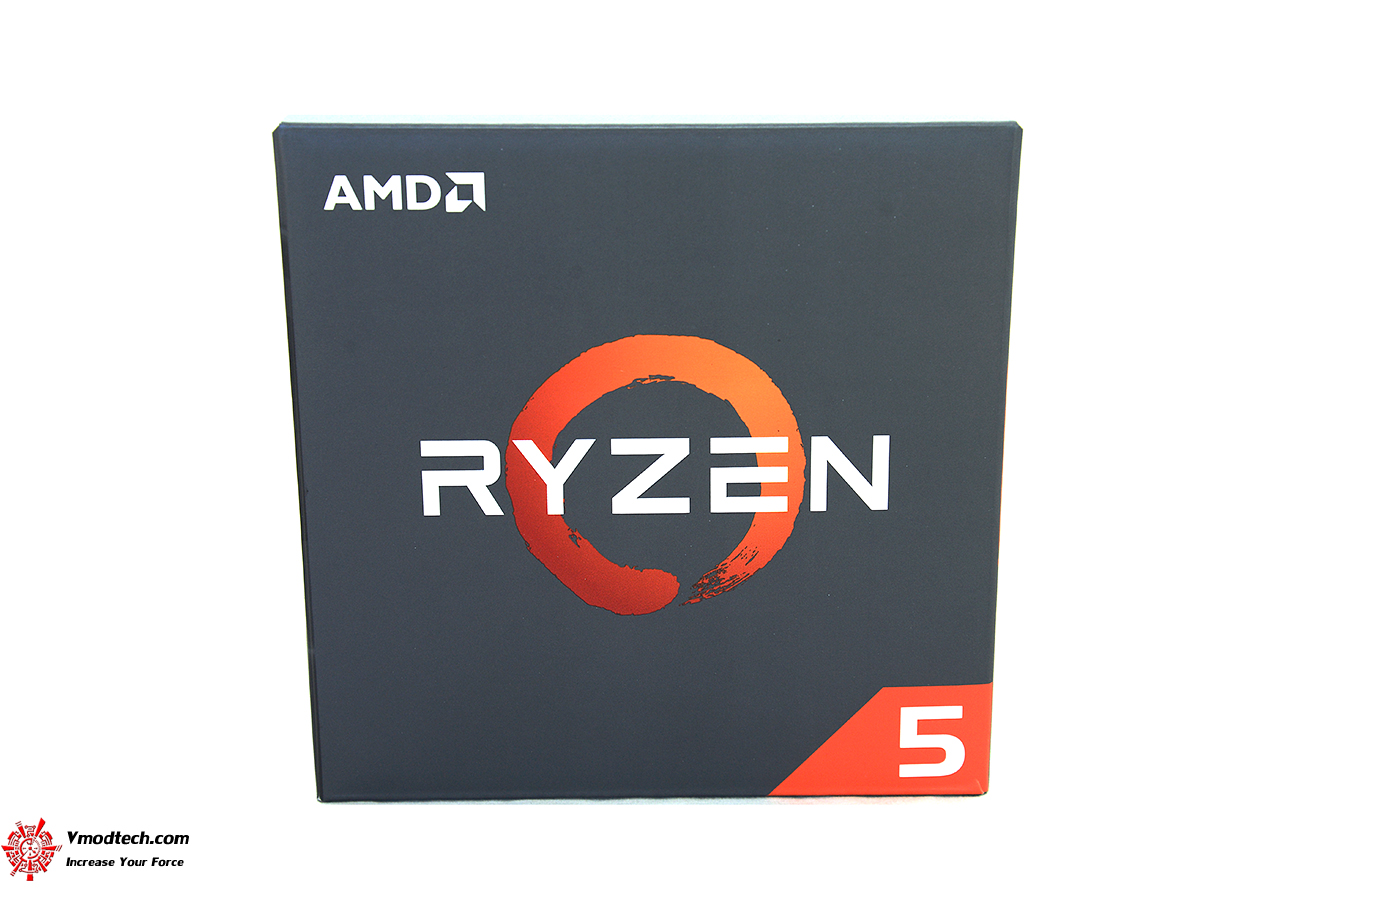 dsc 6564 AMD RYZEN 5 1600X Review